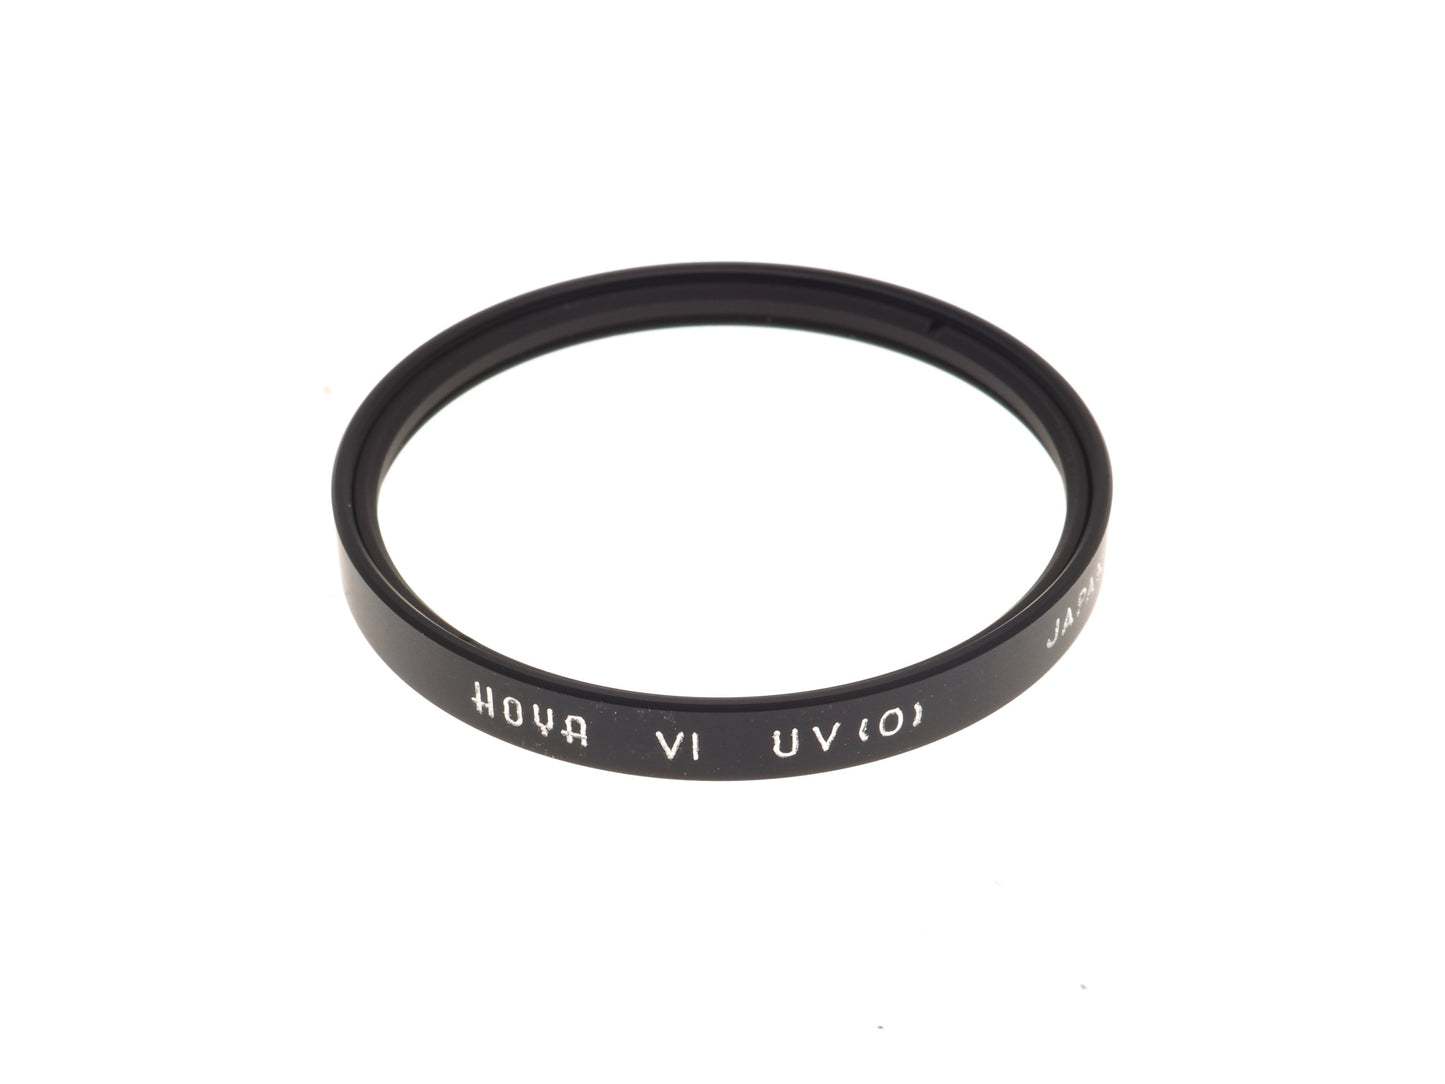 Hoya Series VI UV (0) Filter - Accessory